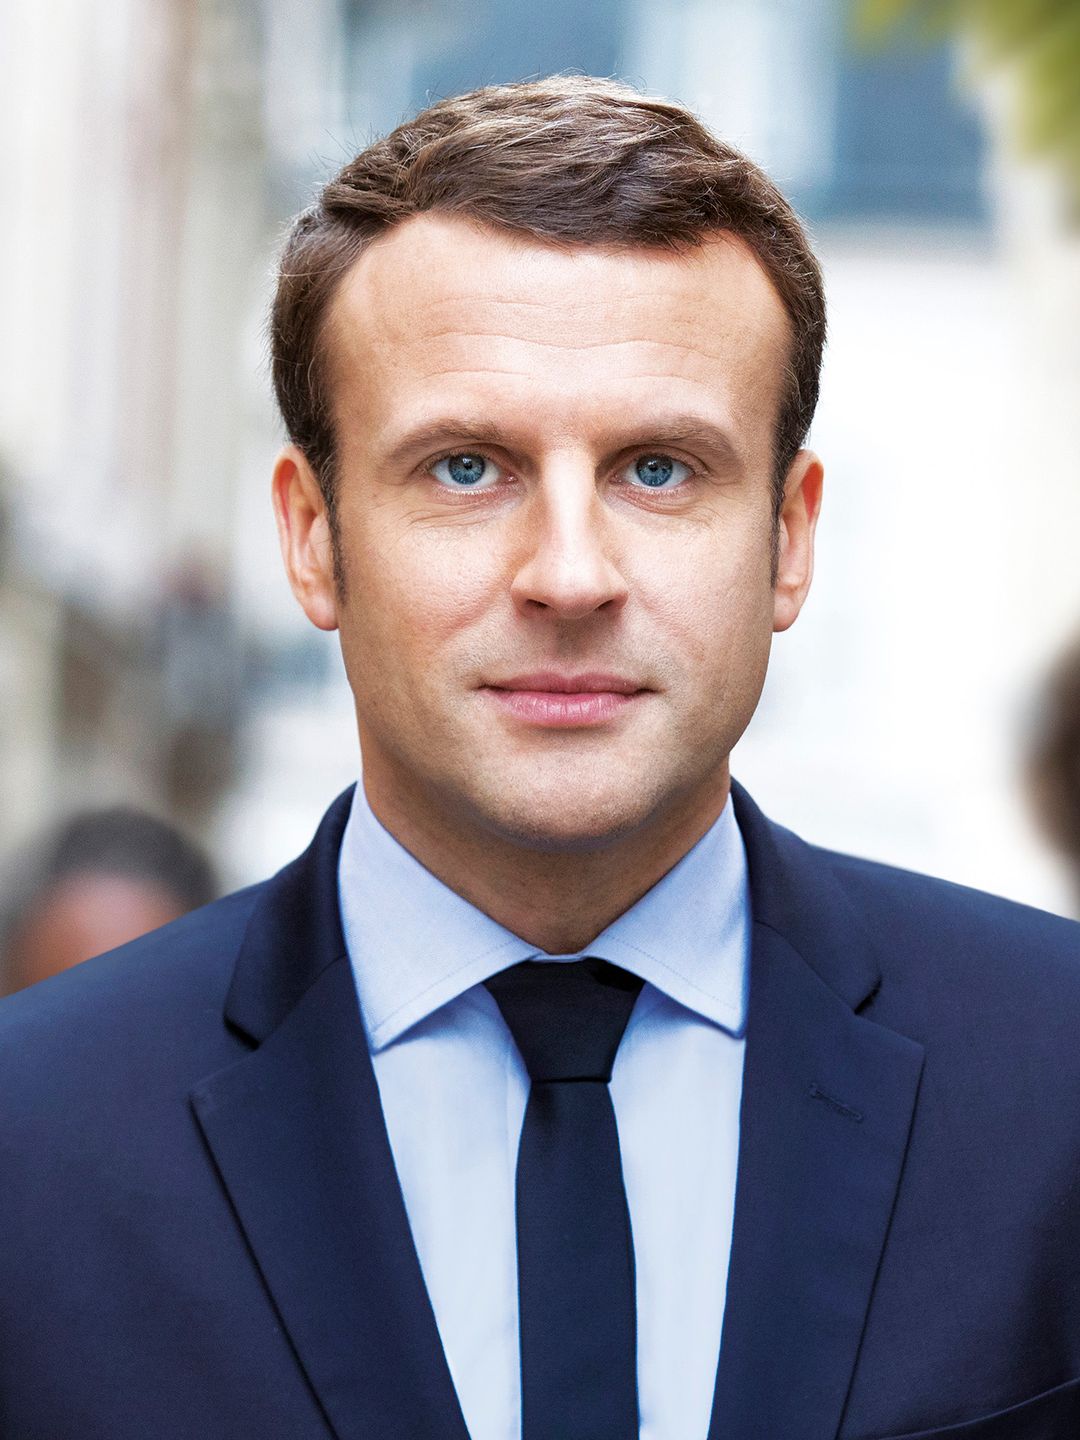 Emmanuel Macron current look